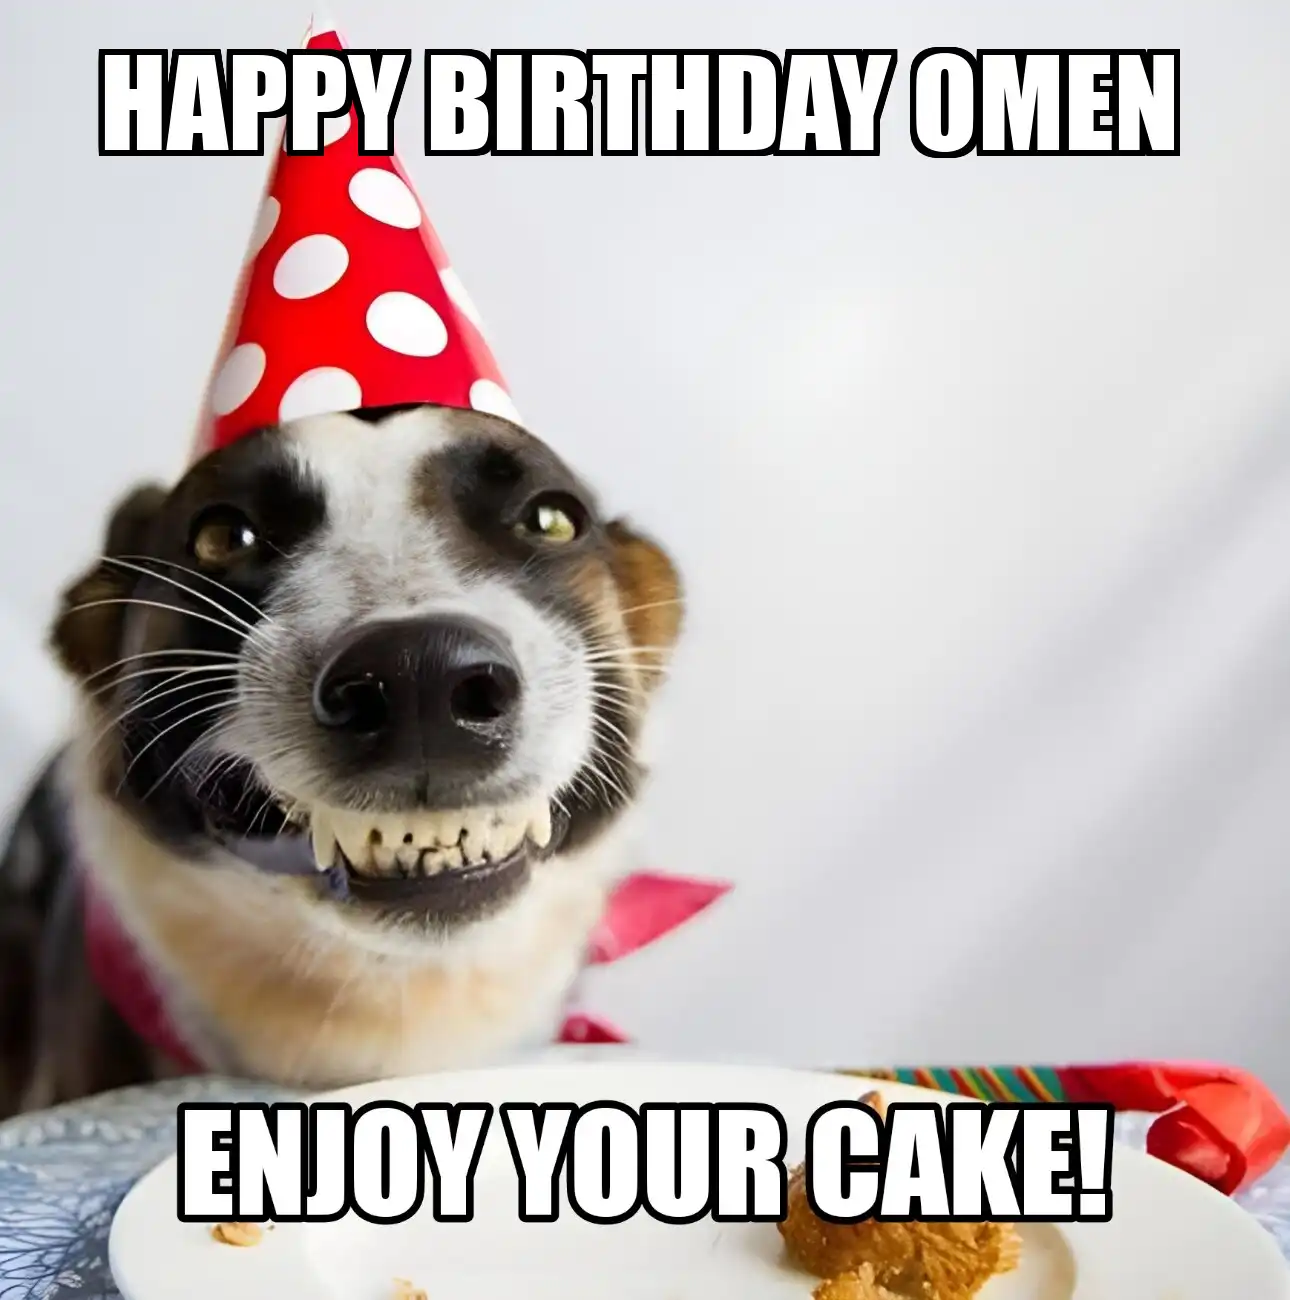 Happy Birthday Omen Enjoy Your Cake Dog Meme